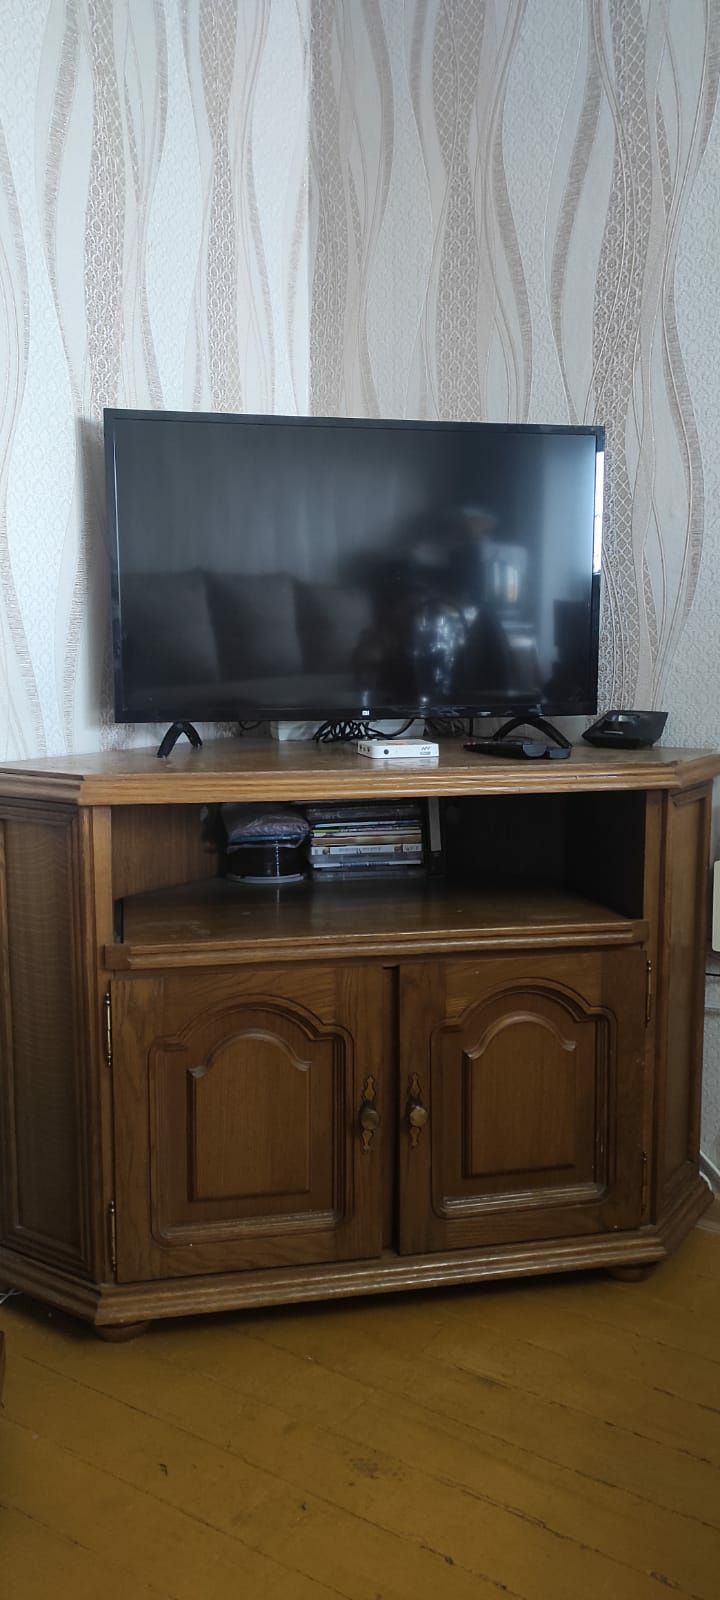 Шкаф и тумбочка Белорусская дубовая мебель